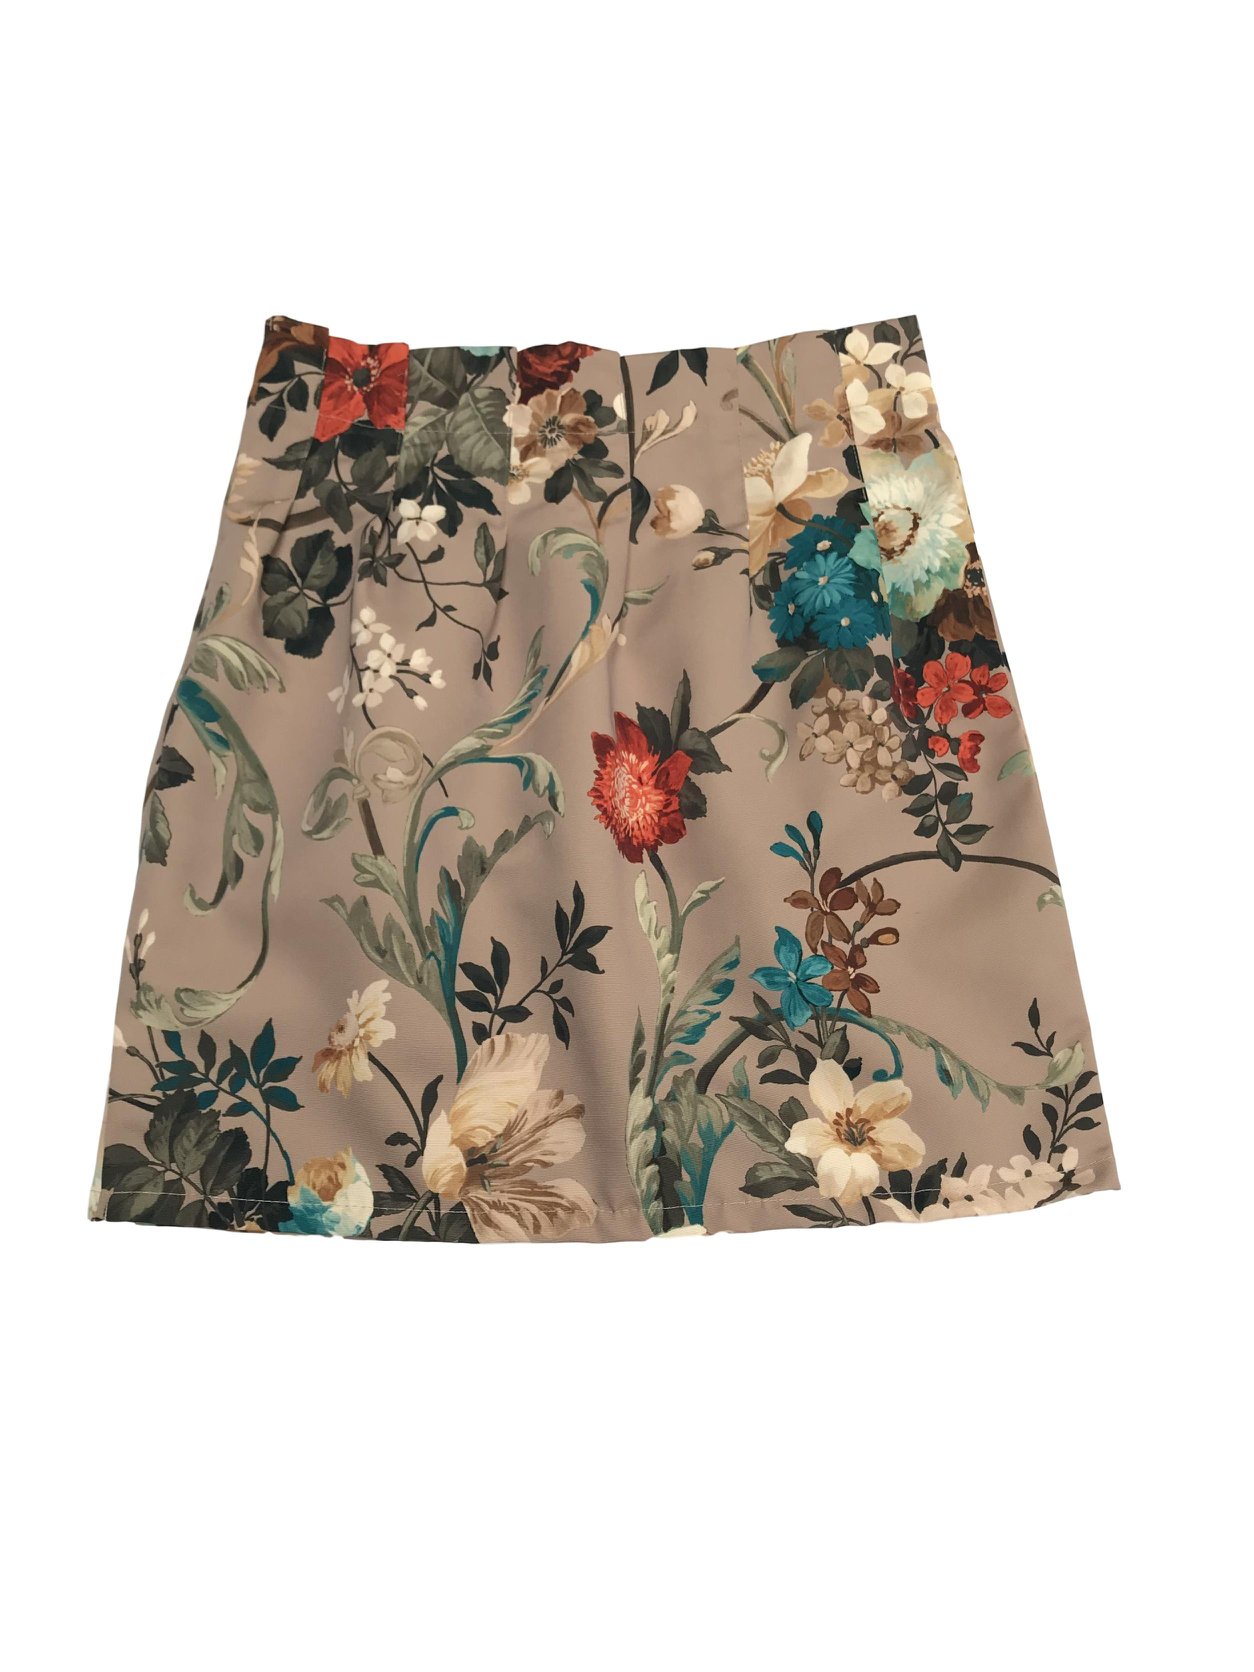 Falda beige con estampado de flores de colores, con pliegues y cierre lateral. Pretina 76cm Largo 48cm